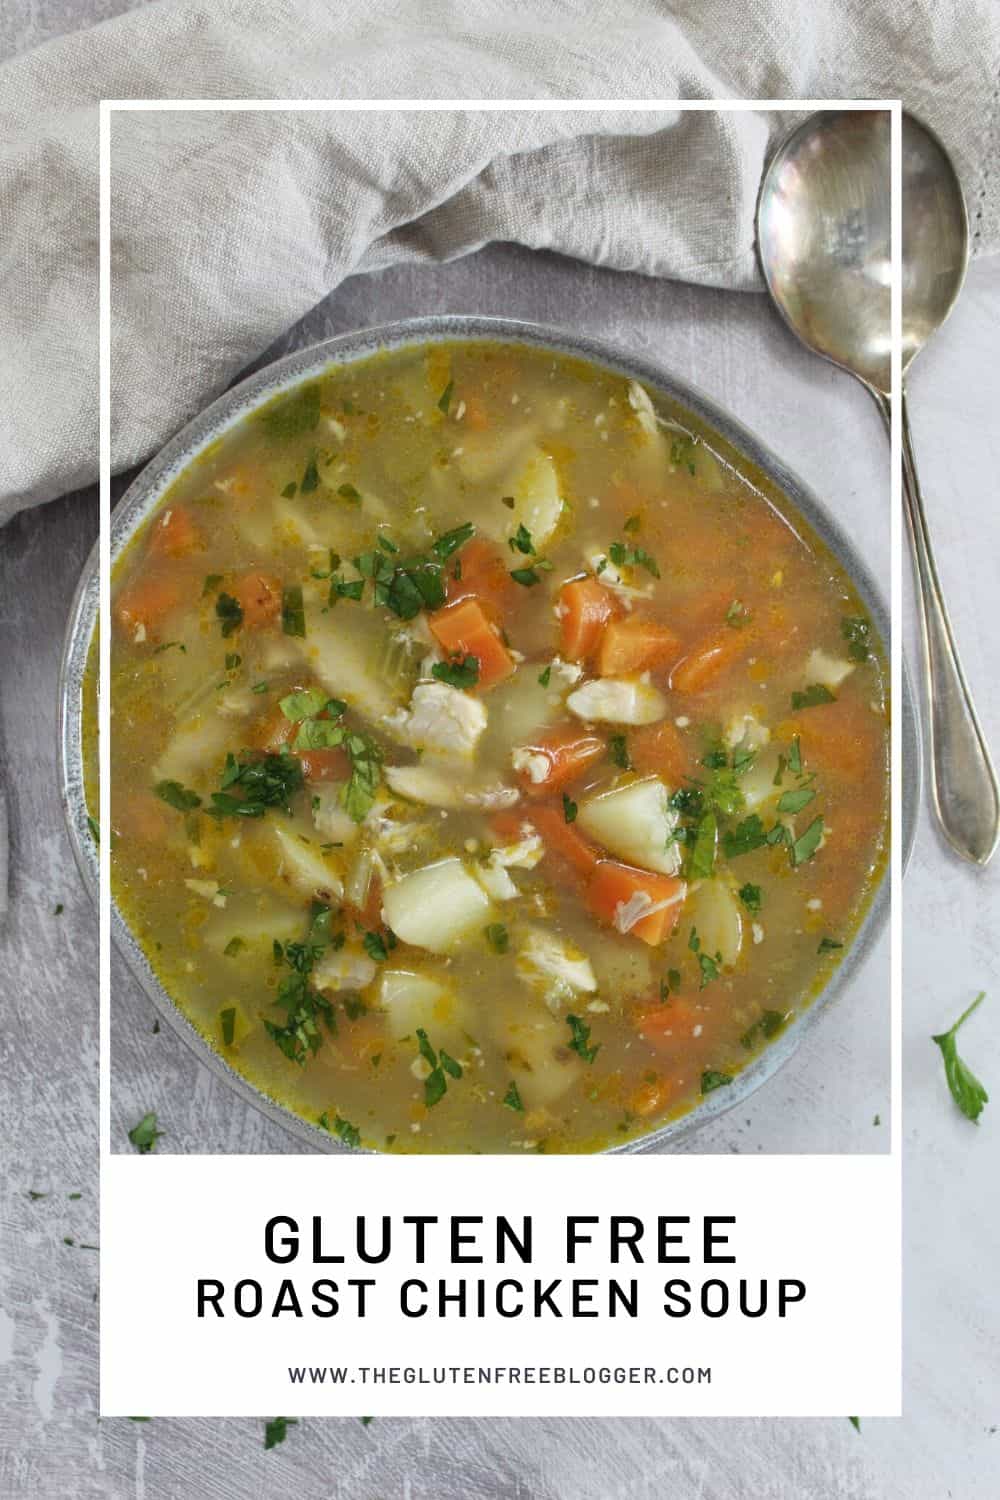 Gluten free roast chicken soup - The Gluten Free Blogger